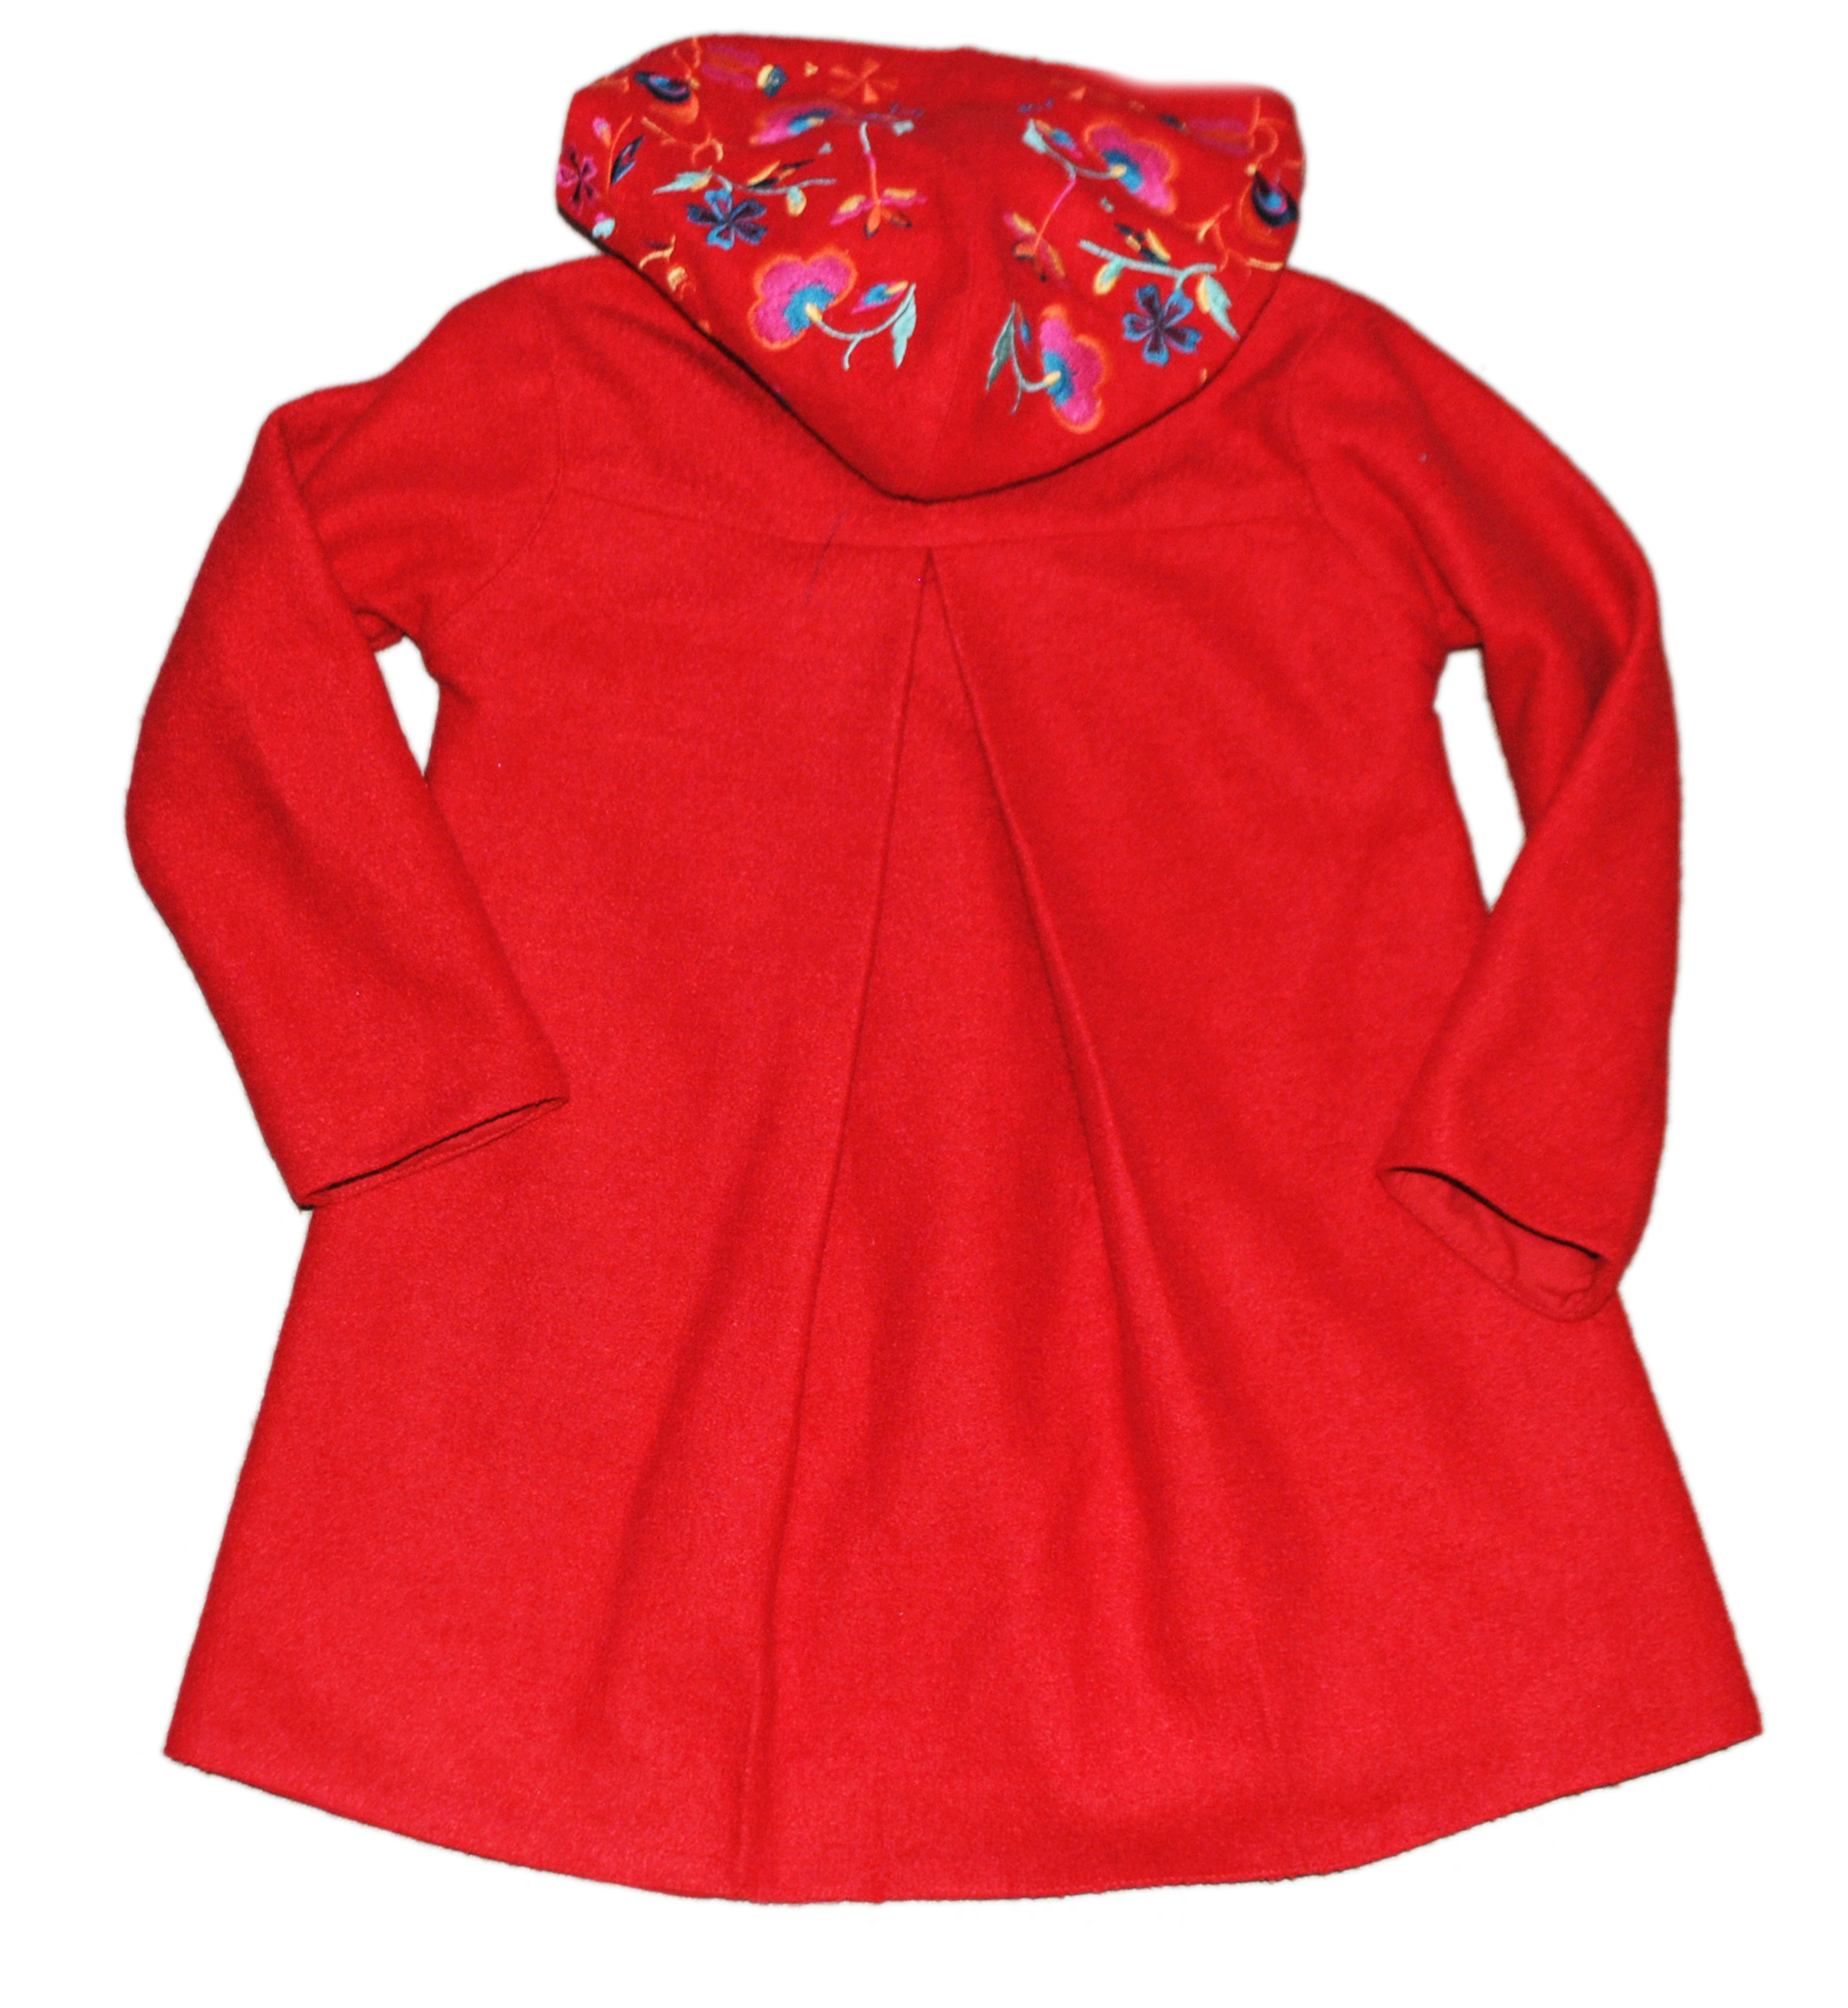 Фото 2: Шерстяное пальто с глубоким капюшоном, застегивается на кнопки, накладные карманы, пуговицы карманы и капюшон расшиты яркими цветами.